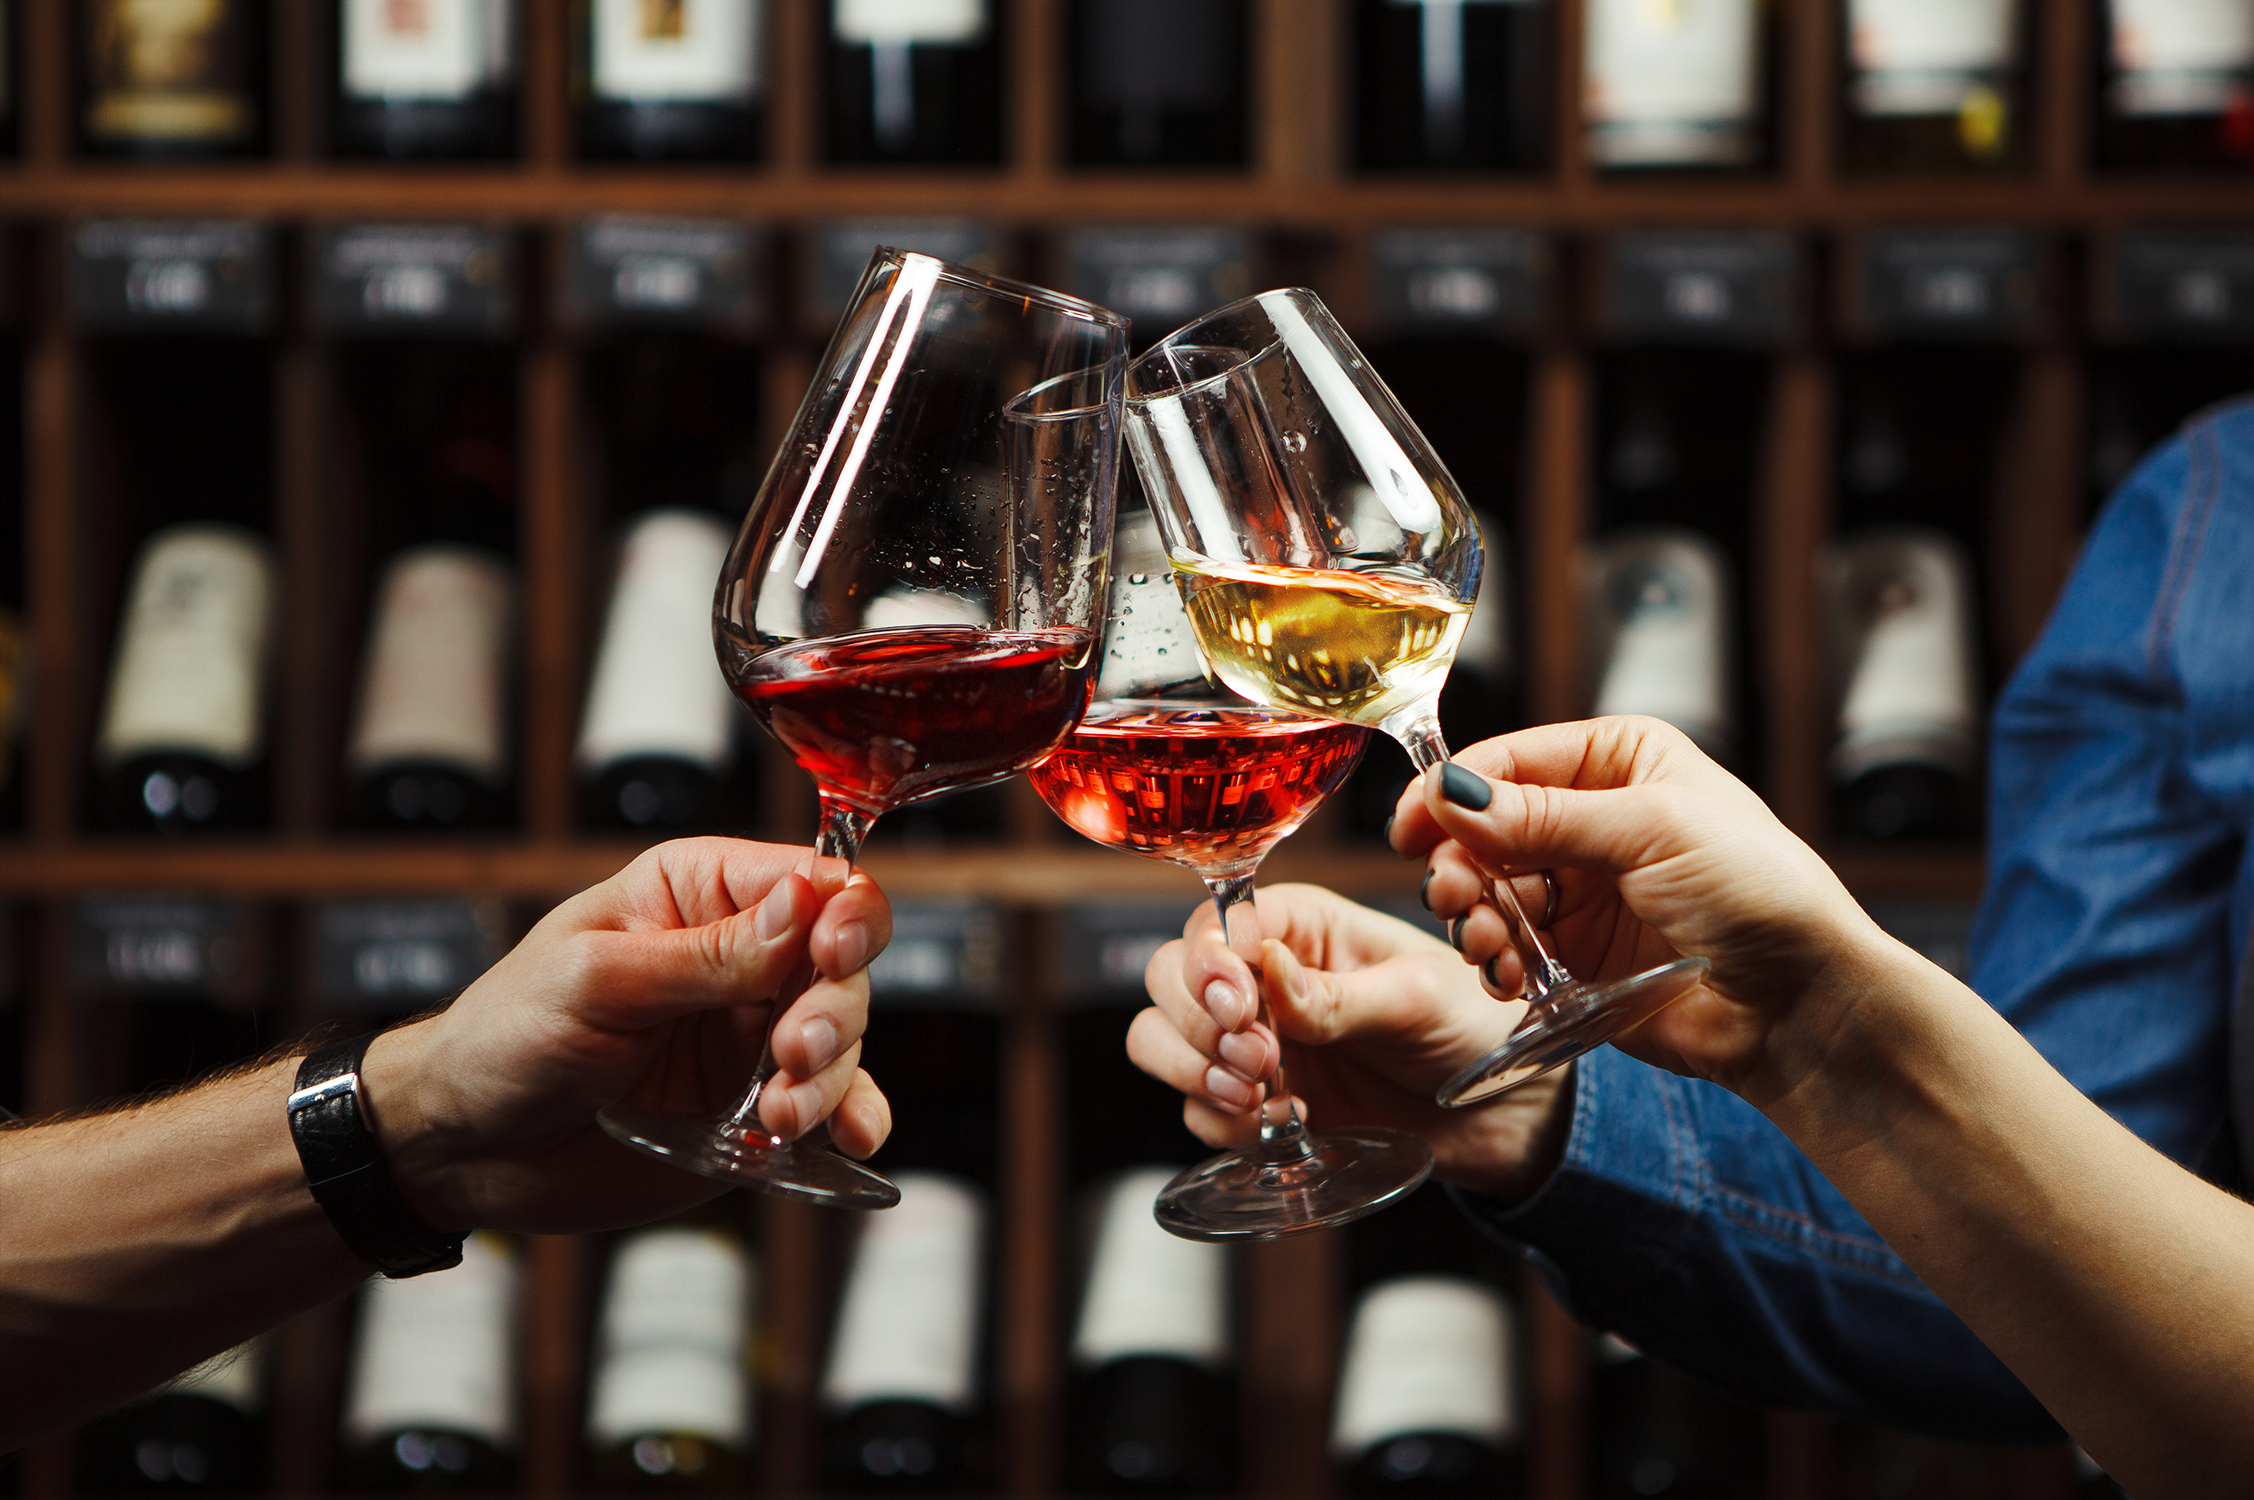 Tastings im Herbst: Von Wein bis Whisky - Geschmackserlebnisse in der goldenen Jahreszeit